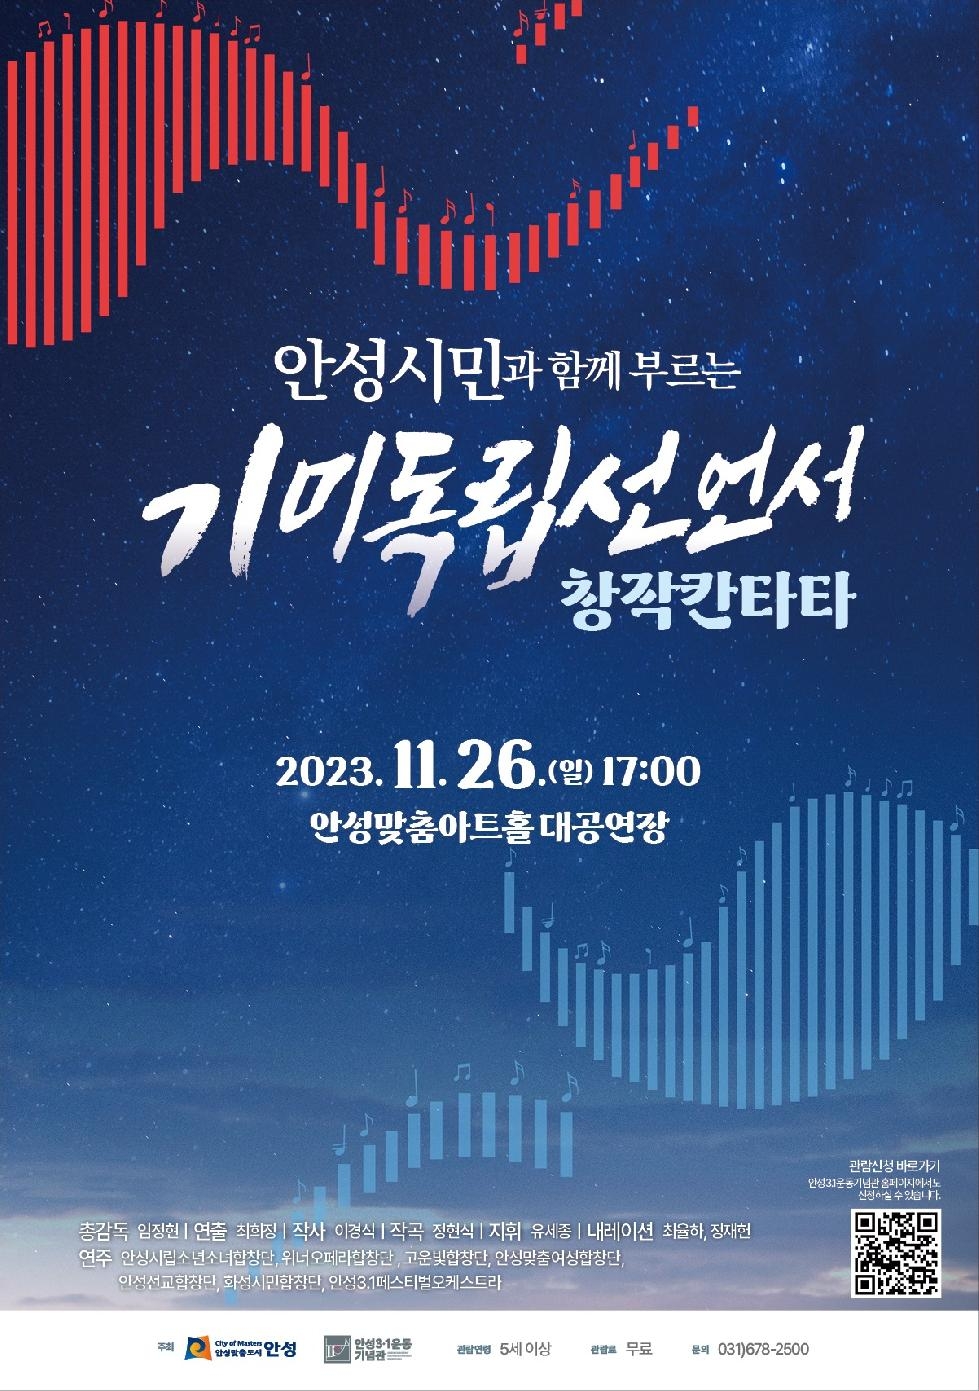 안성 3ㆍ1운동 창작 칸타타 ‘안성시민과 함께 부르는 기미독립선언서’ 공연 개최